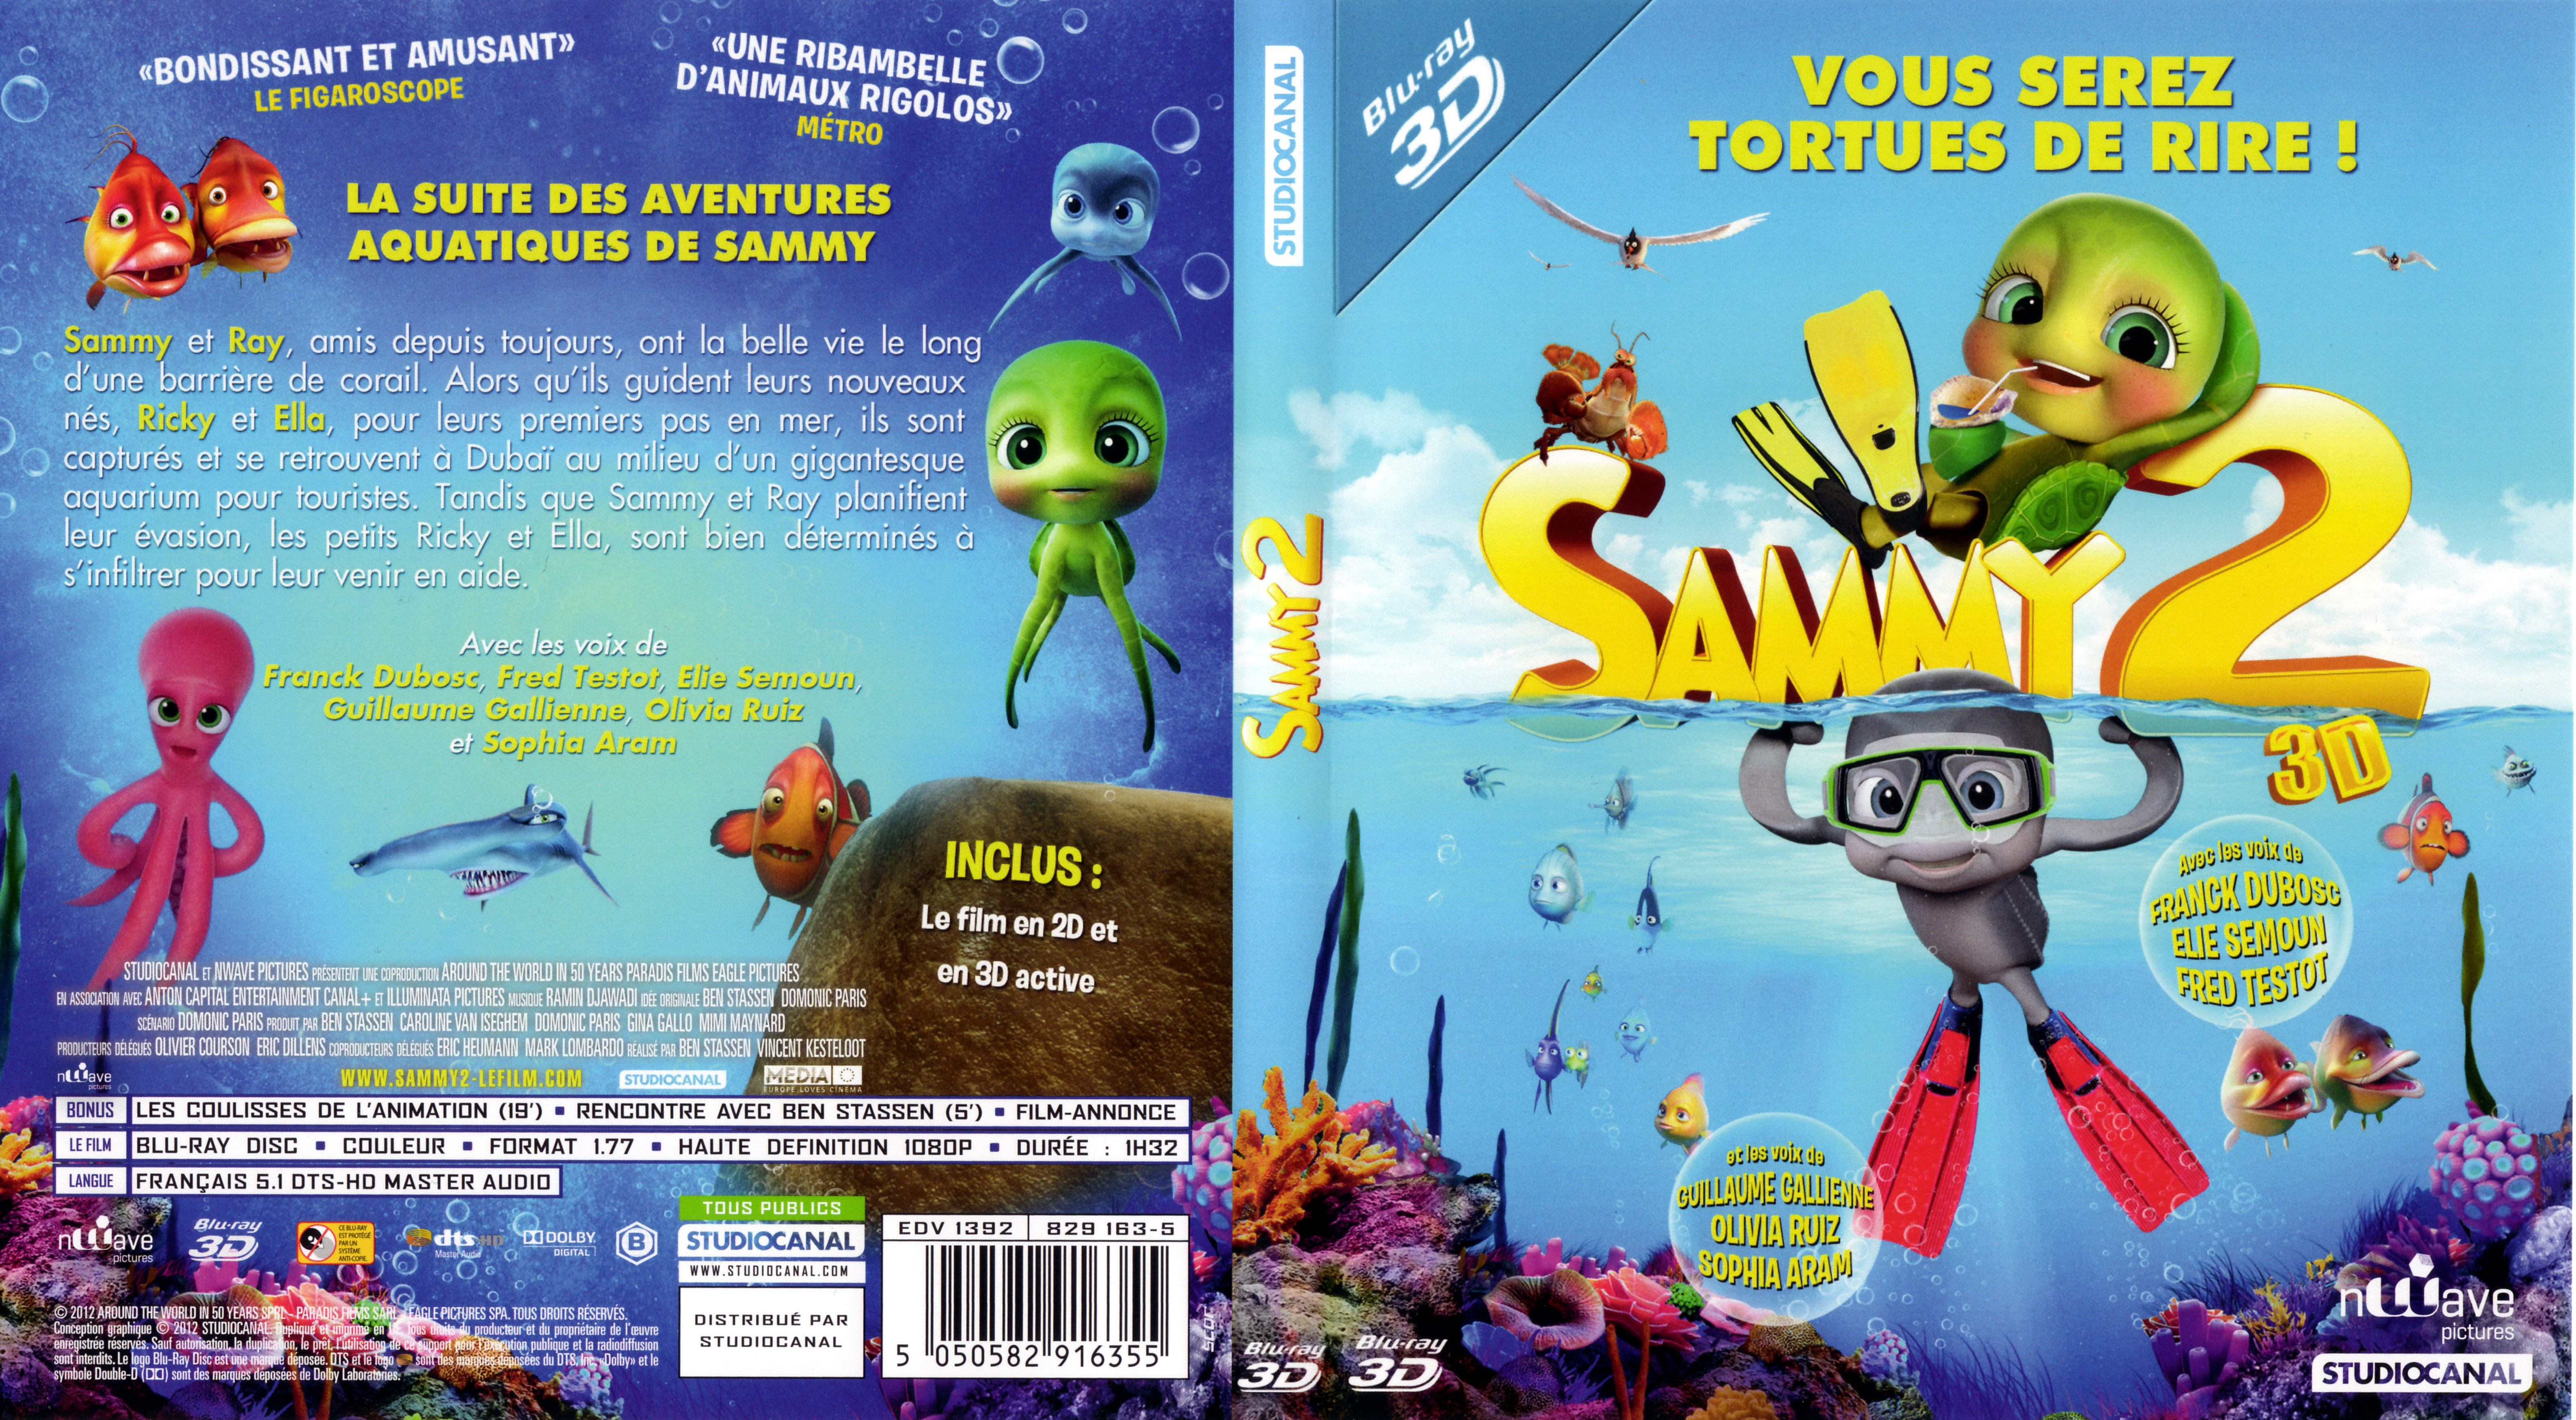 Jaquette DVD Sammy 2 (BLU-RAY) v2